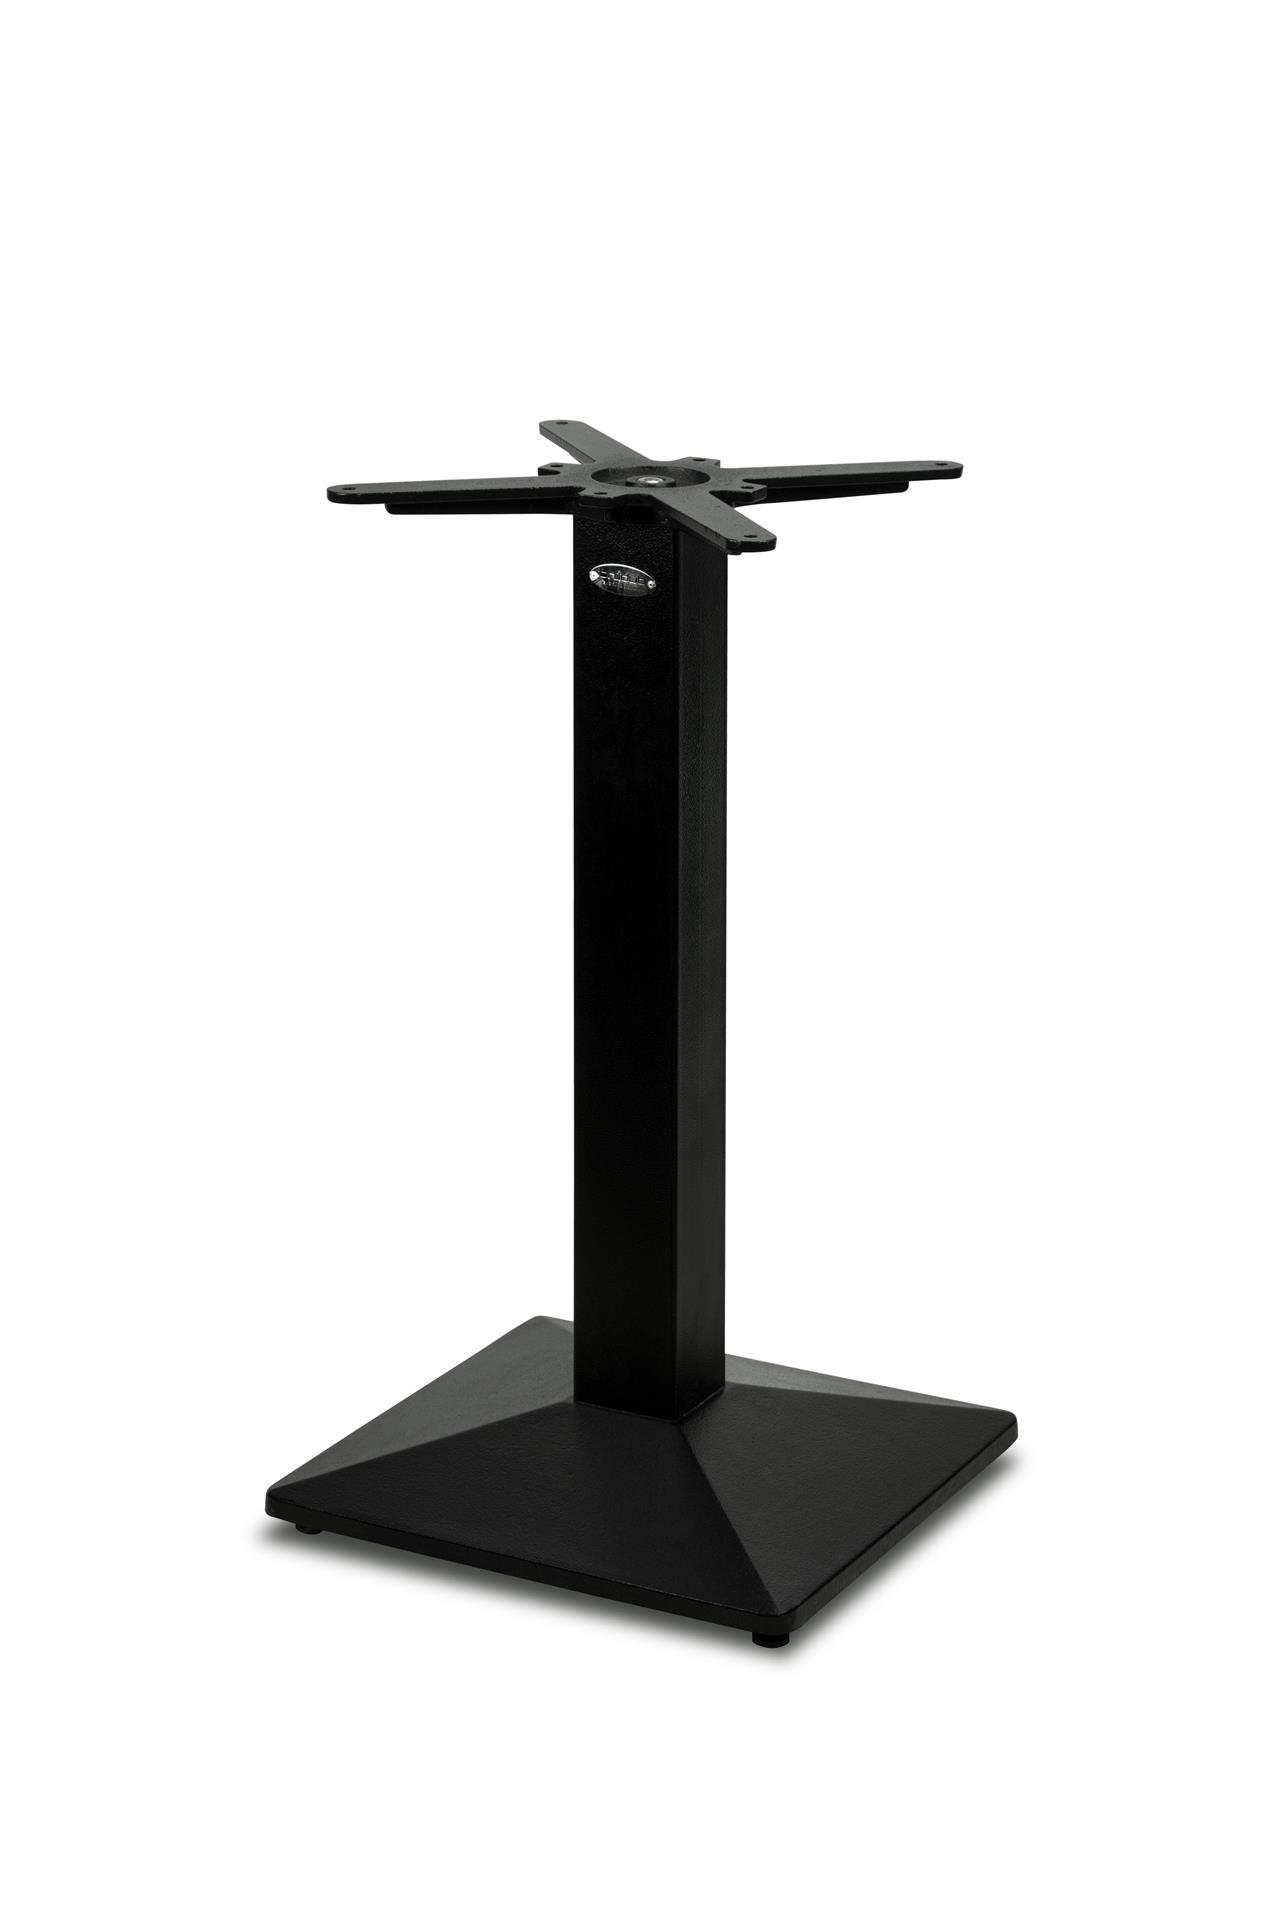 Gusseisen Premium Tischgestell PJ7007 (Tischbein), pulverbeschichtet schwarz, quadratisch